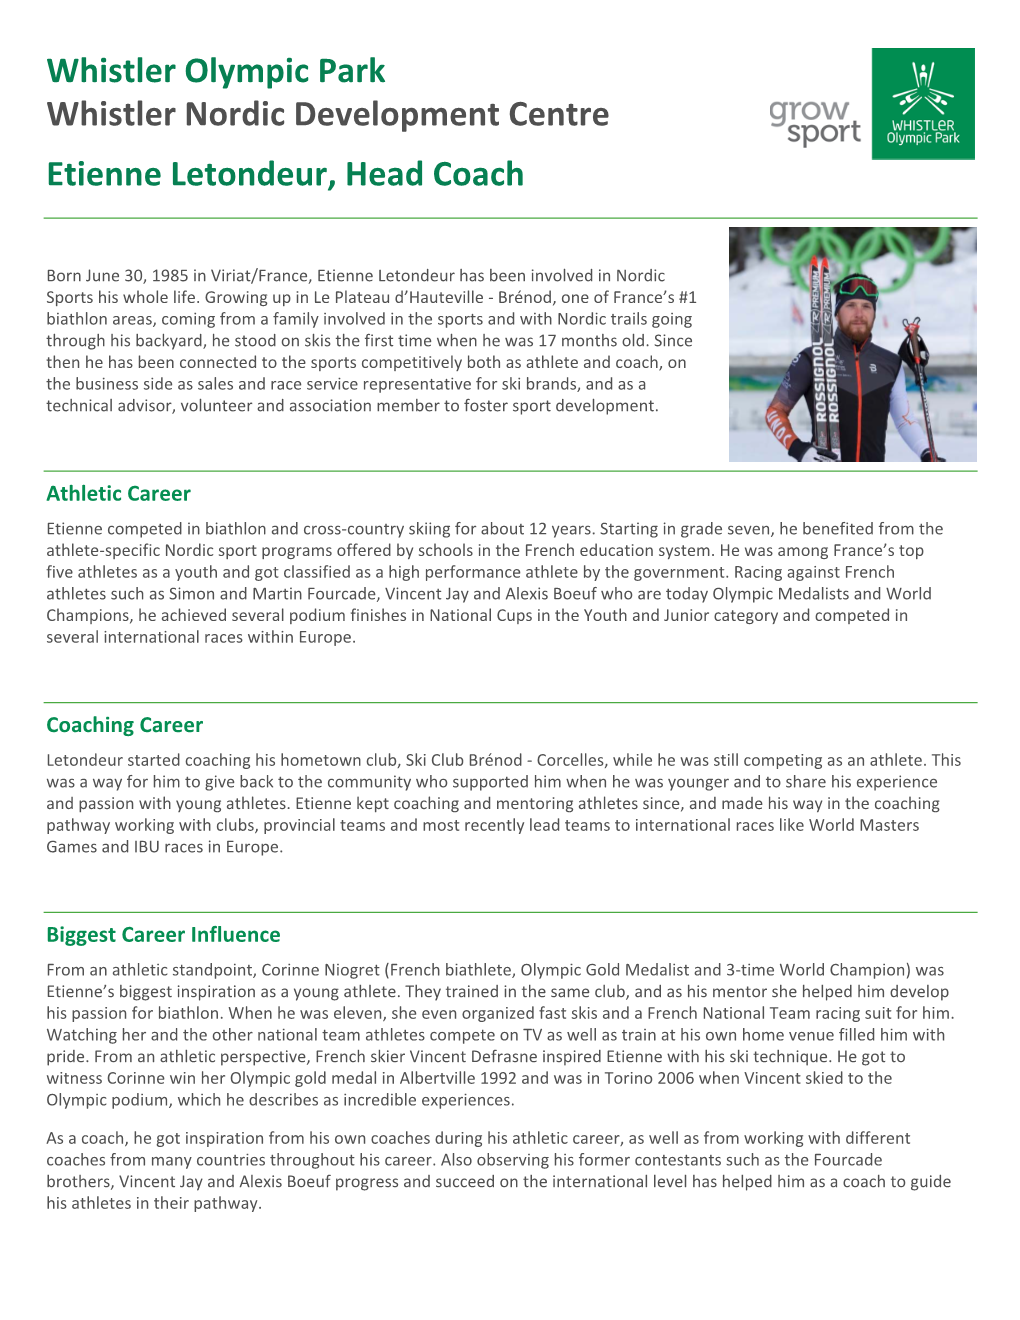 Full Biography WNDC Head Coach Etienne Letondeur